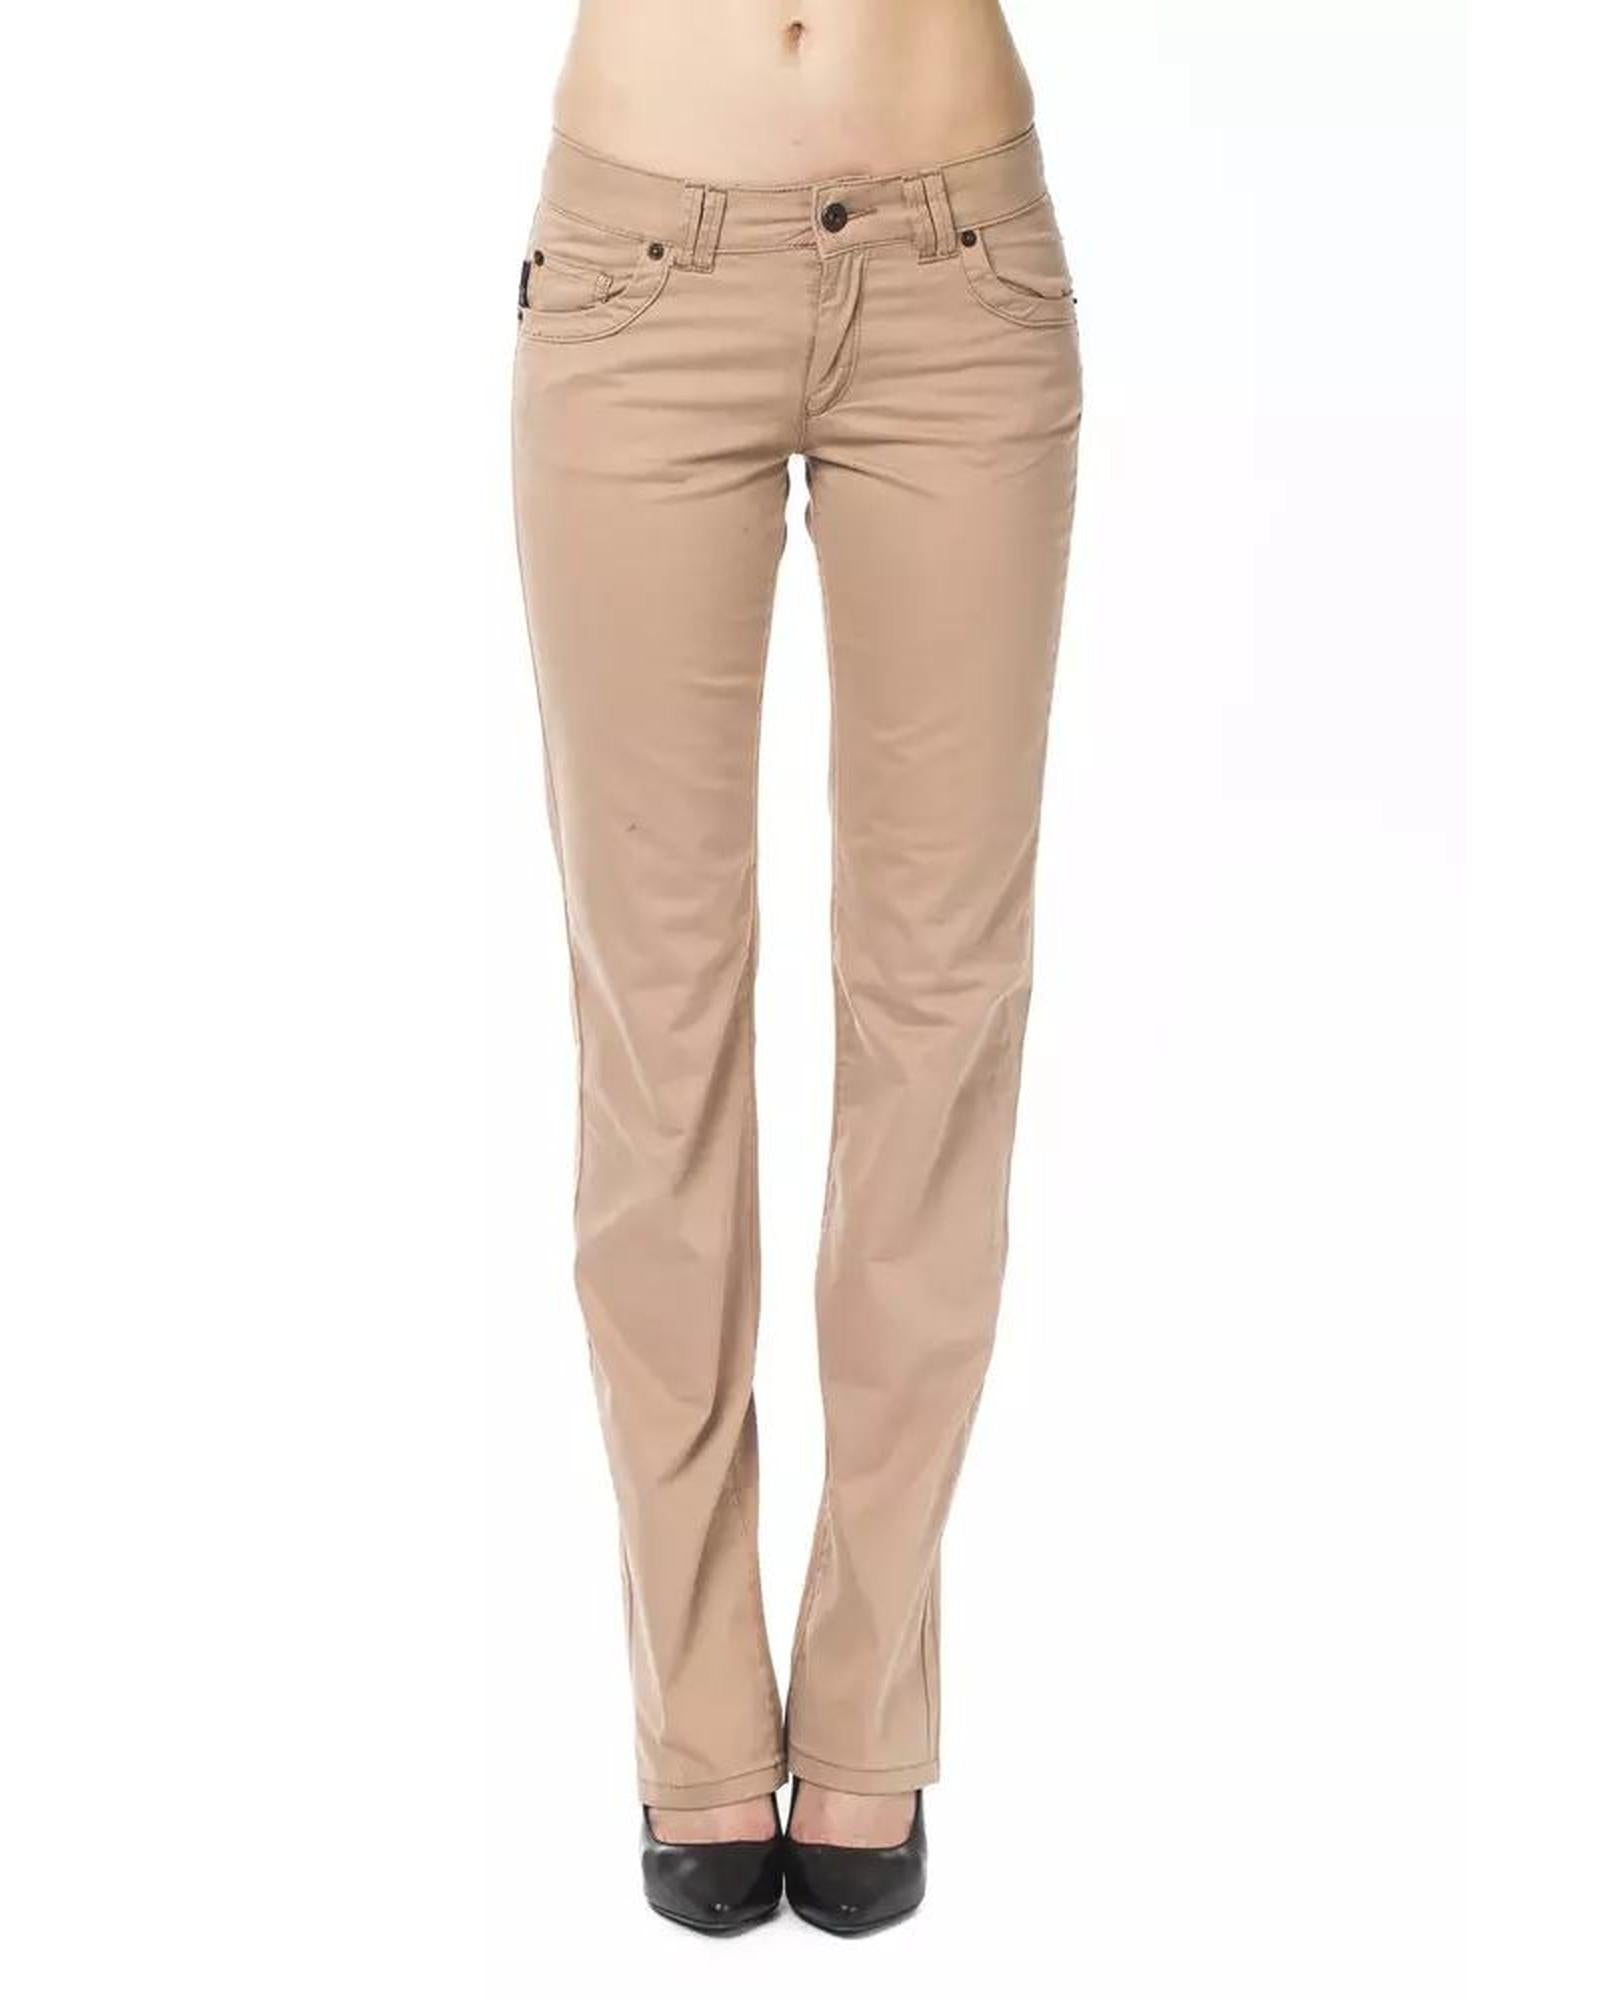 Women's Beige Cotton Jeans & Pant - W30 US